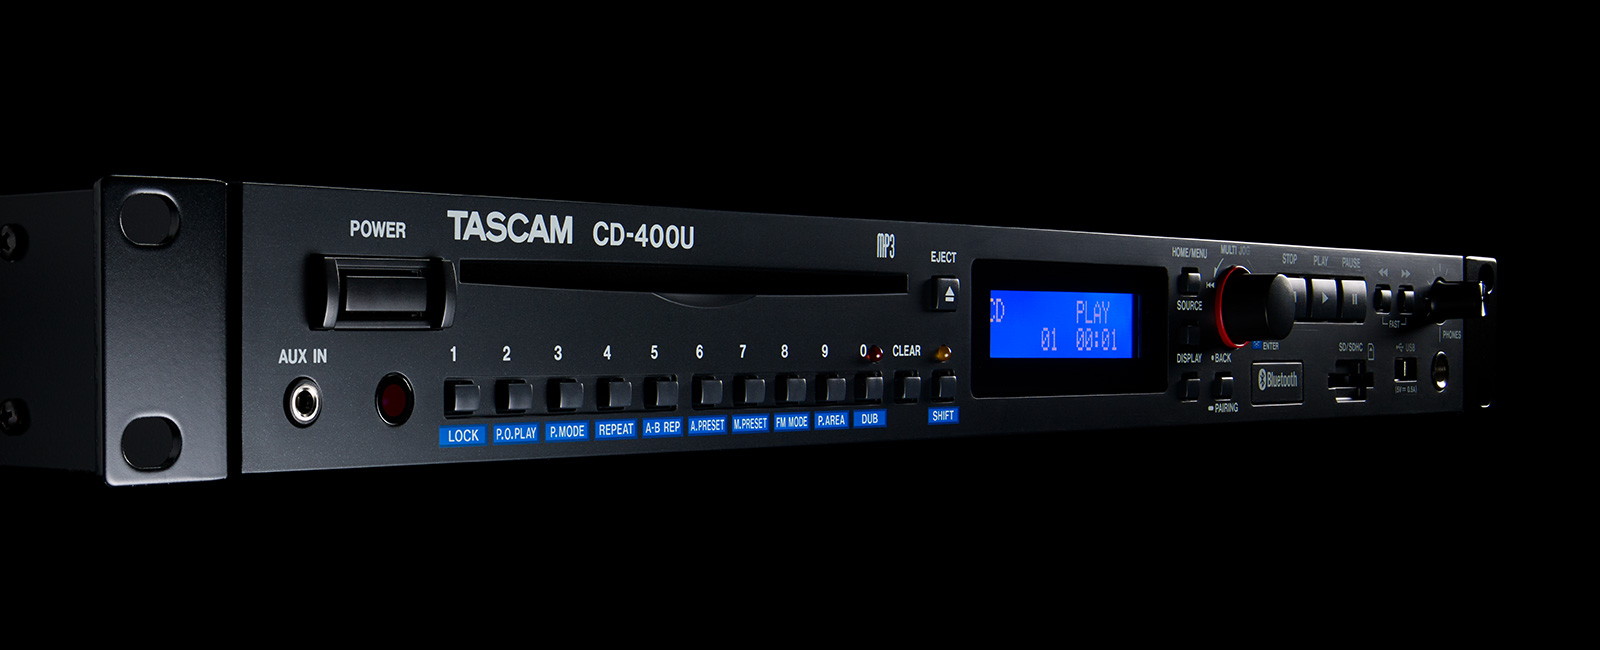 『CD-400U』の最新ファームウェア V1.42をリリース